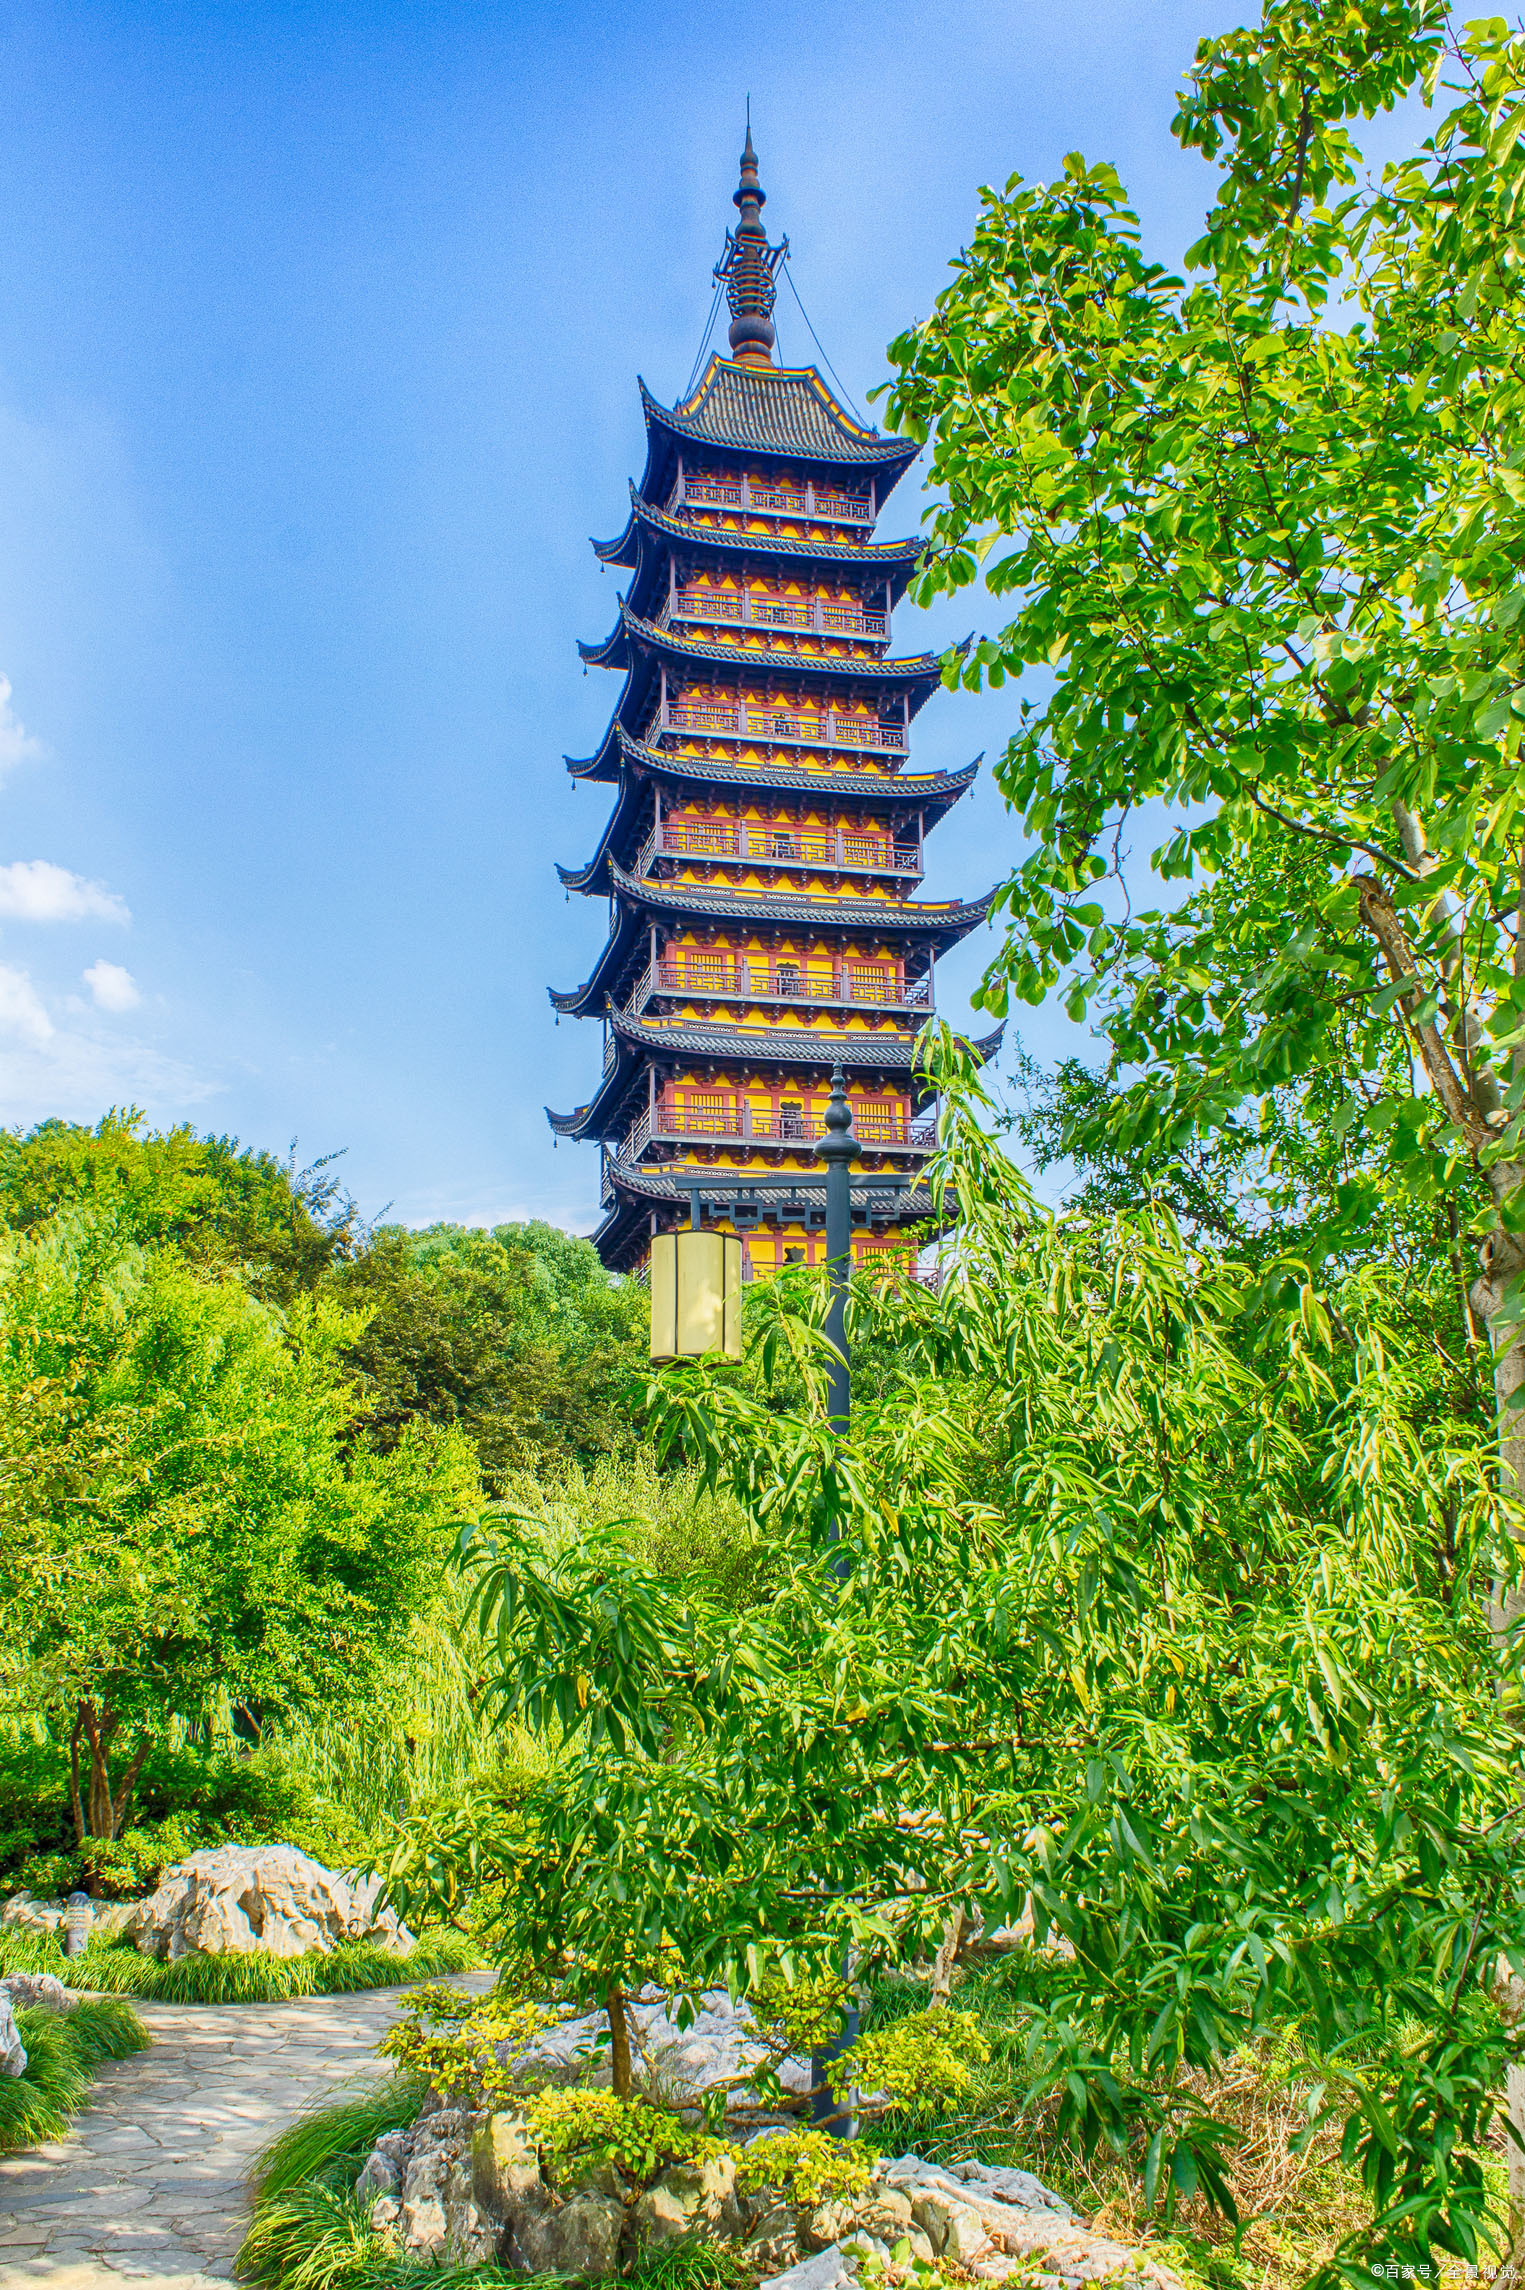 江南两座方塔,常熟方塔与上海方塔,外观相似,哪座更值得一去?